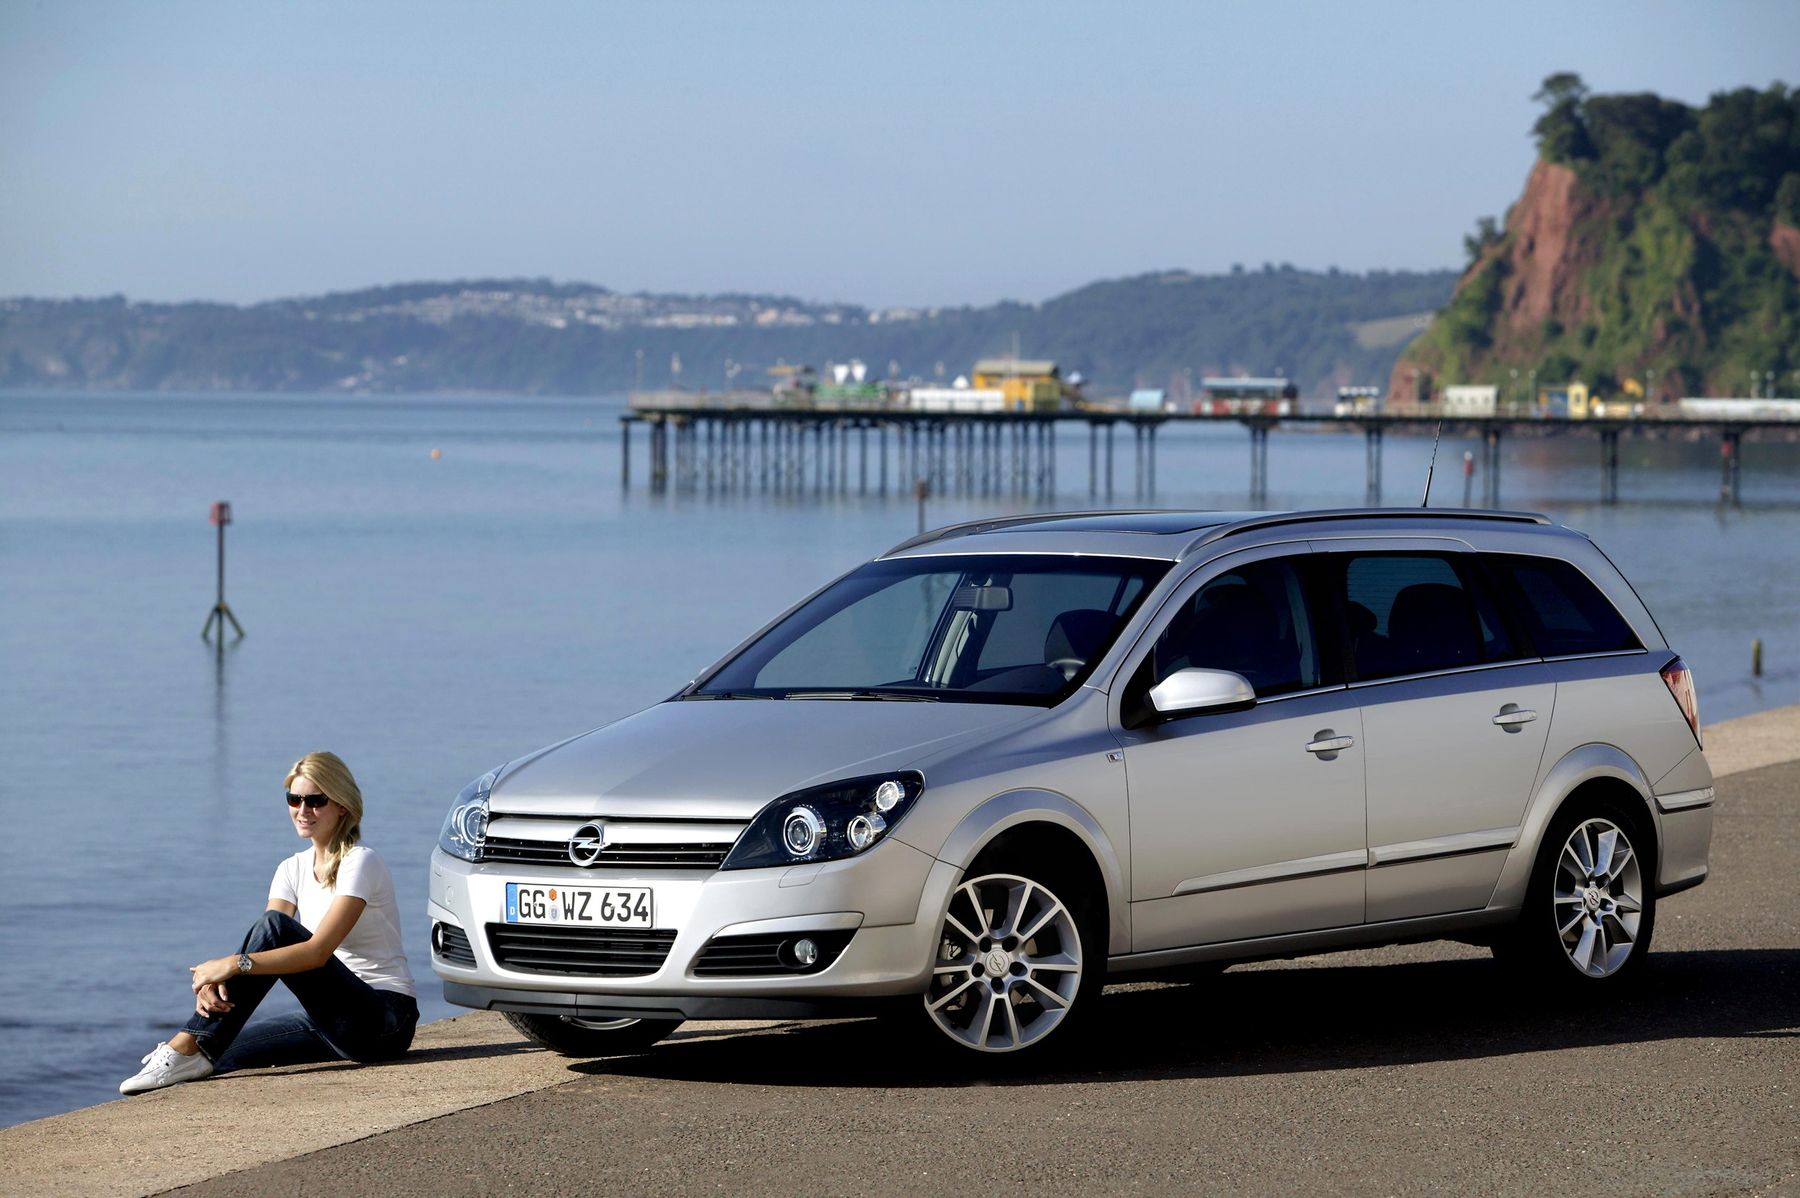 Опель универсал 1.4. Opel Astra h 2007 универсал. Opel Astra Caravan (h) 2004. Opel Astra h Caravan. Opel Astra h 2006 универсал.